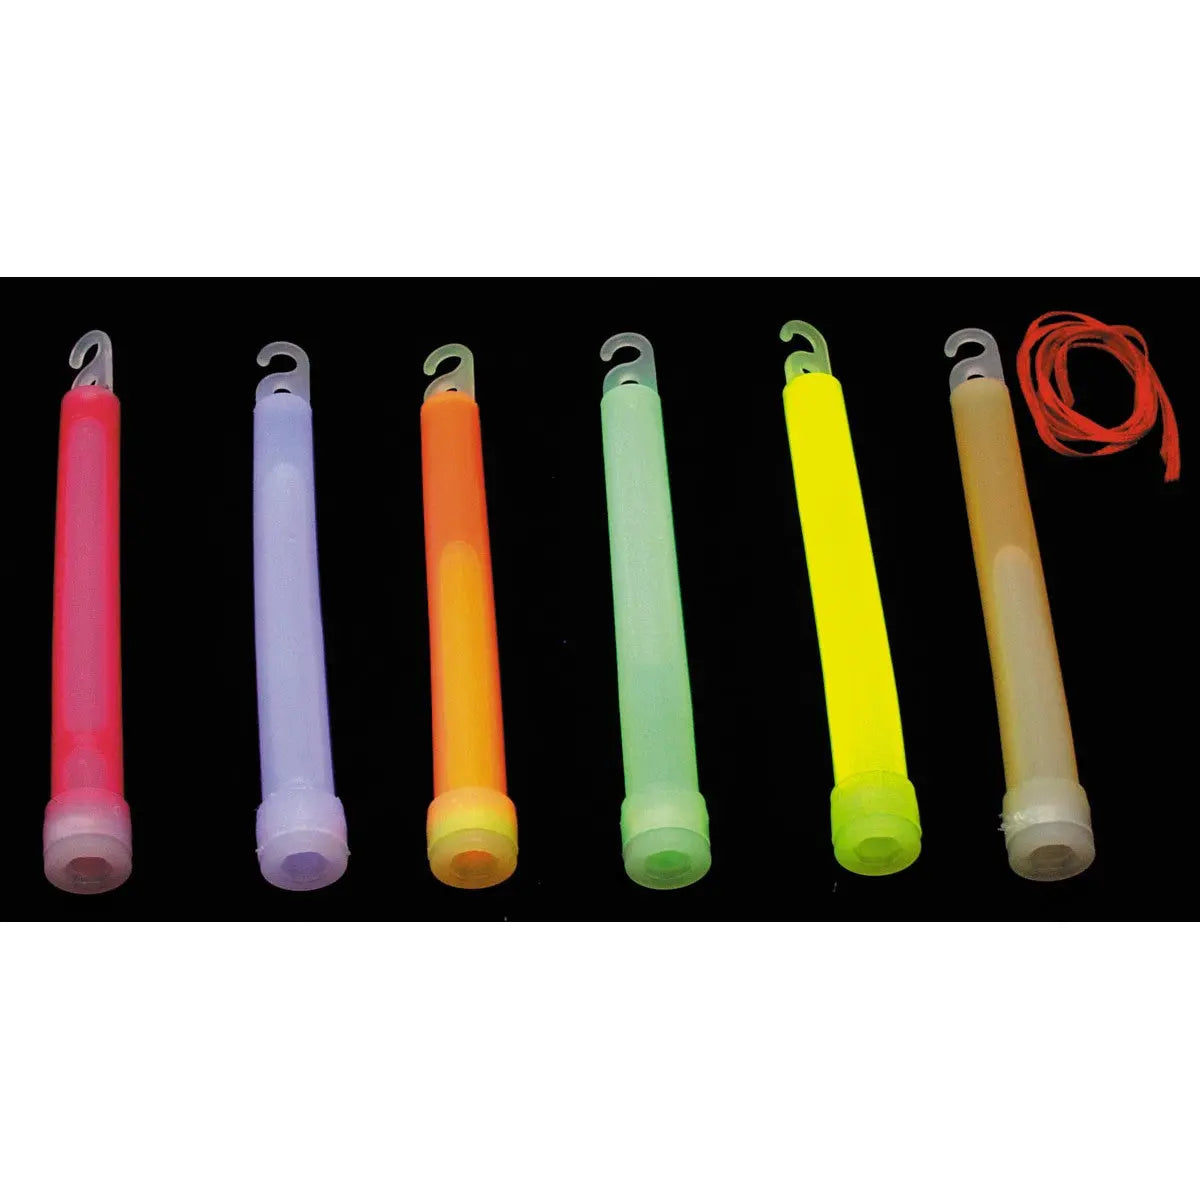 Light stick, green, 15 x 1.5 cm NSO Gear Light stick